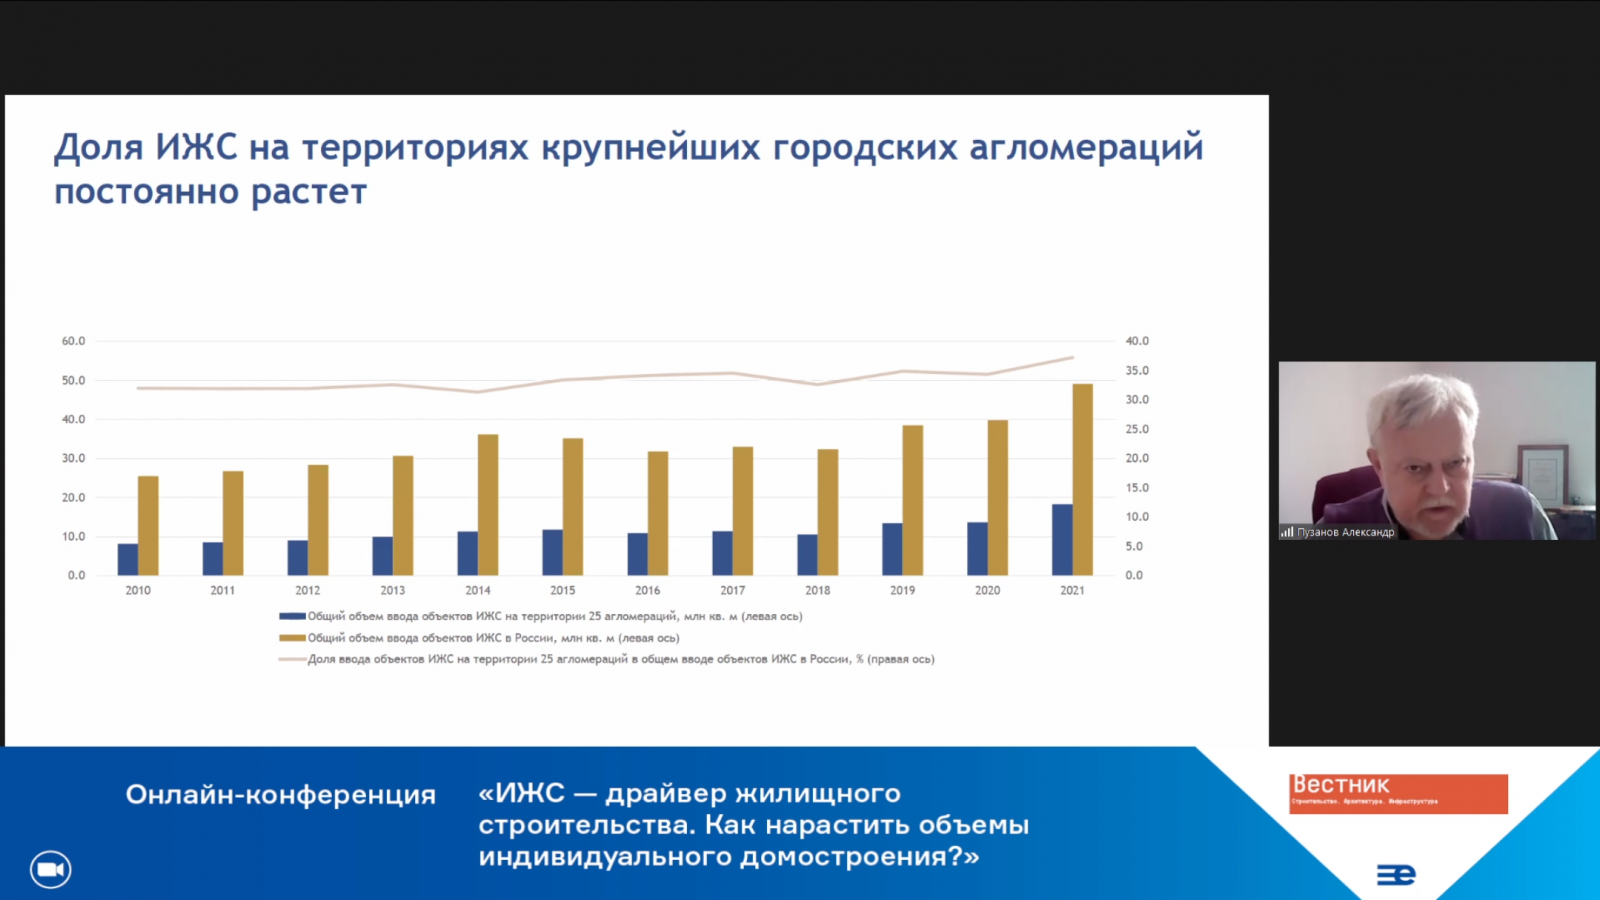 Александр Пузанов: «Доля ИЖС в крупнейших агломерациях достигает 40%» 